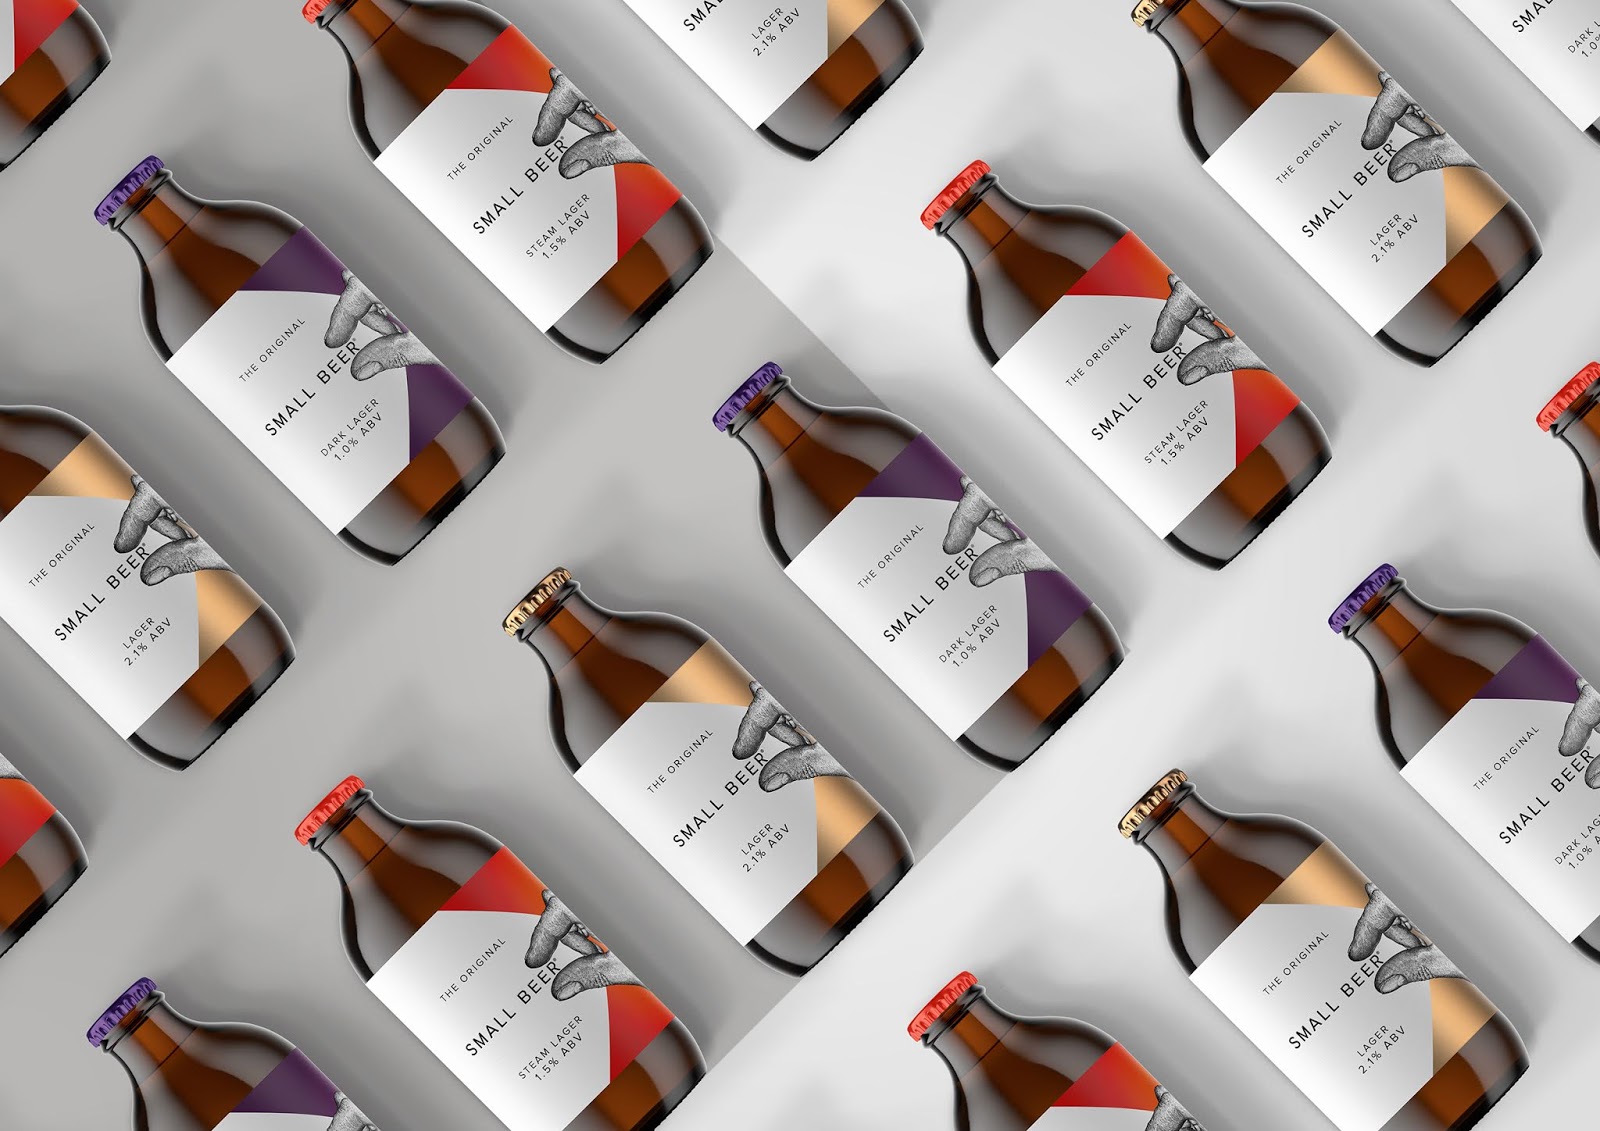 啤酒品牌包装设计西安oe欧亿体育app官方下载
品牌包装设计